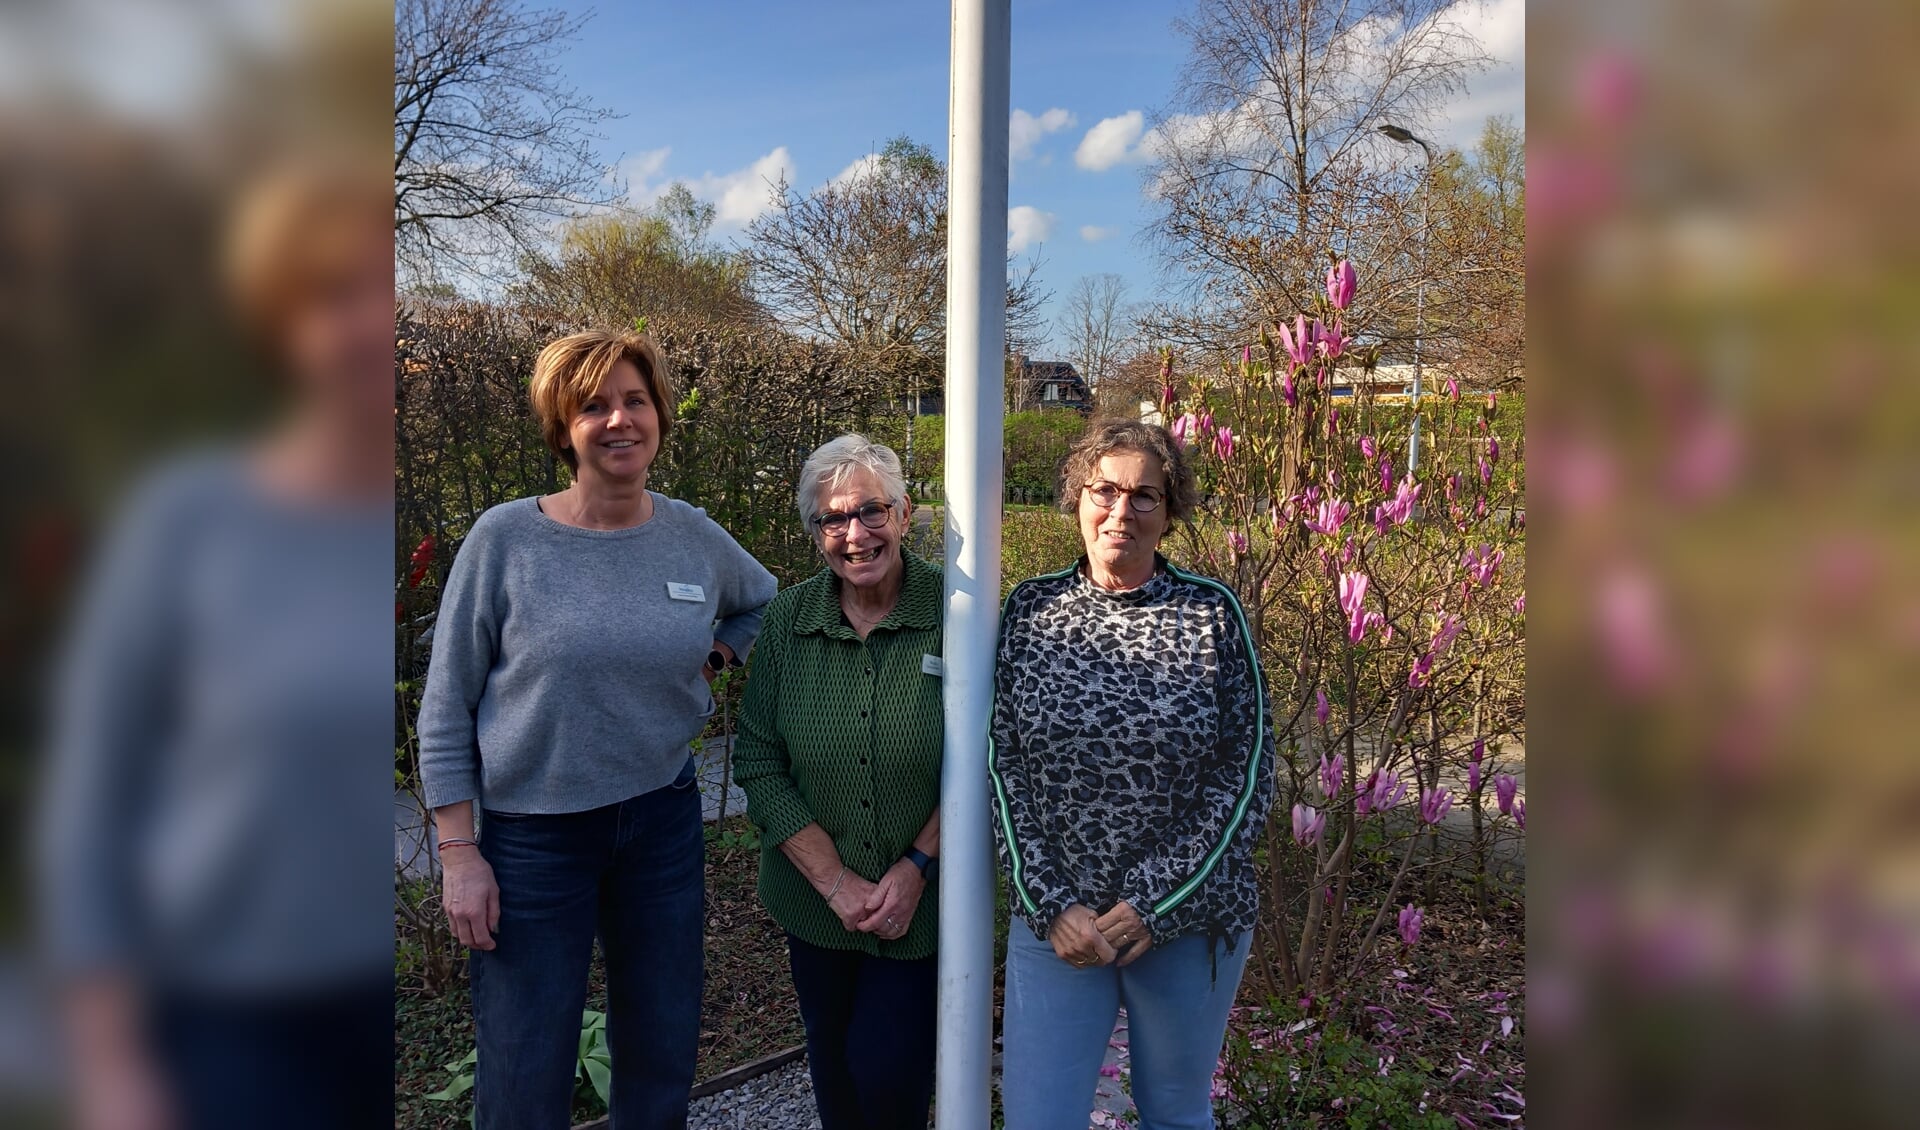 Joyce Leunisse, Anky van Bloois en Plony Kippersluis bij de vlaggenmast in de tuin voor het hospice.